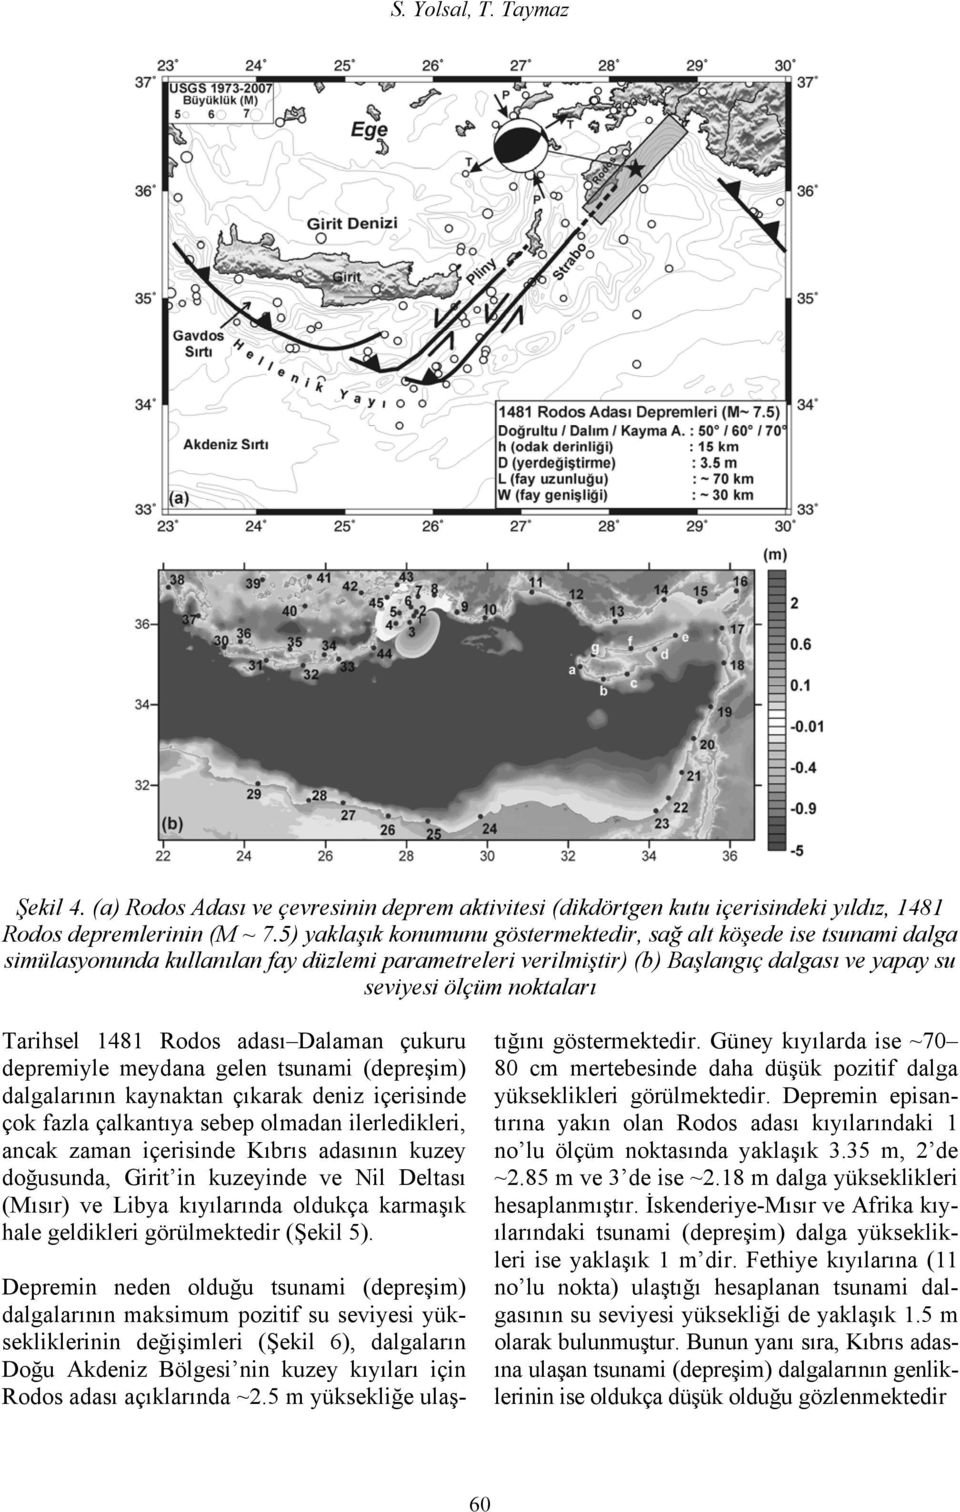 Tarihsel 1481 Rodos adası Dalaman çukuru depremiyle meydana gelen tsunami (depreşim) dalgalarının kaynaktan çıkarak deniz içerisinde çok fazla çalkantıya sebep olmadan ilerledikleri, ancak zaman